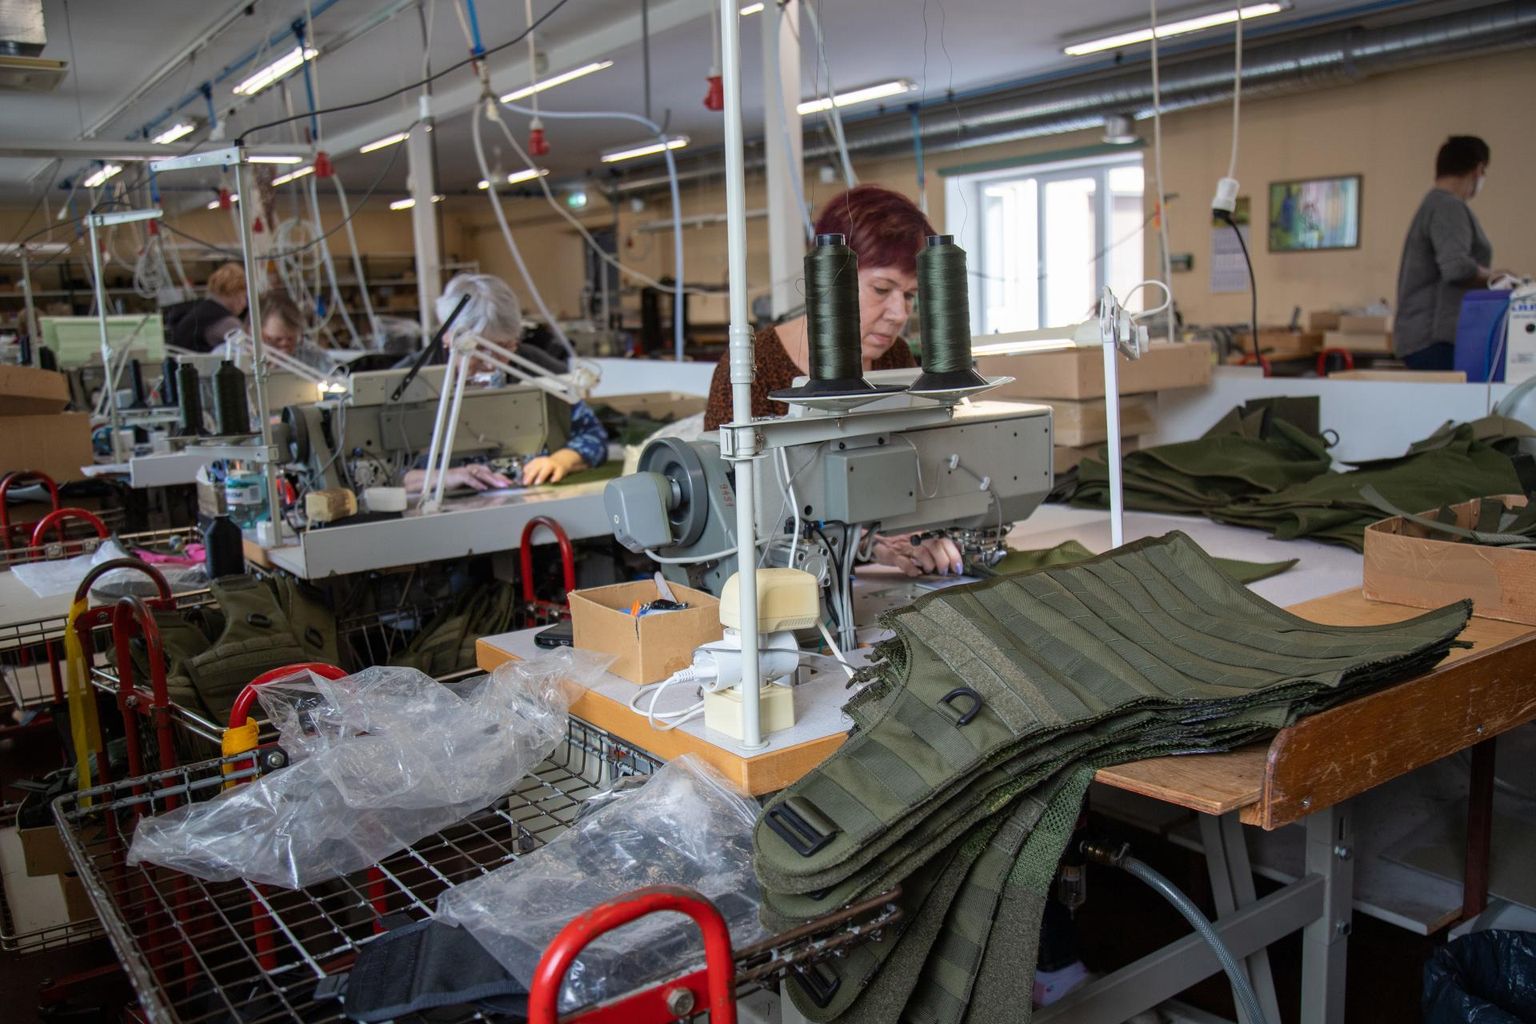 Galvi-Linda tootmismahtu sõda praeguseks otseselt mõjutanud ei ole, kuid on märgata, et eraisikud ja väikeettevõtted ostavad asju, mida ukrainlastele saata.